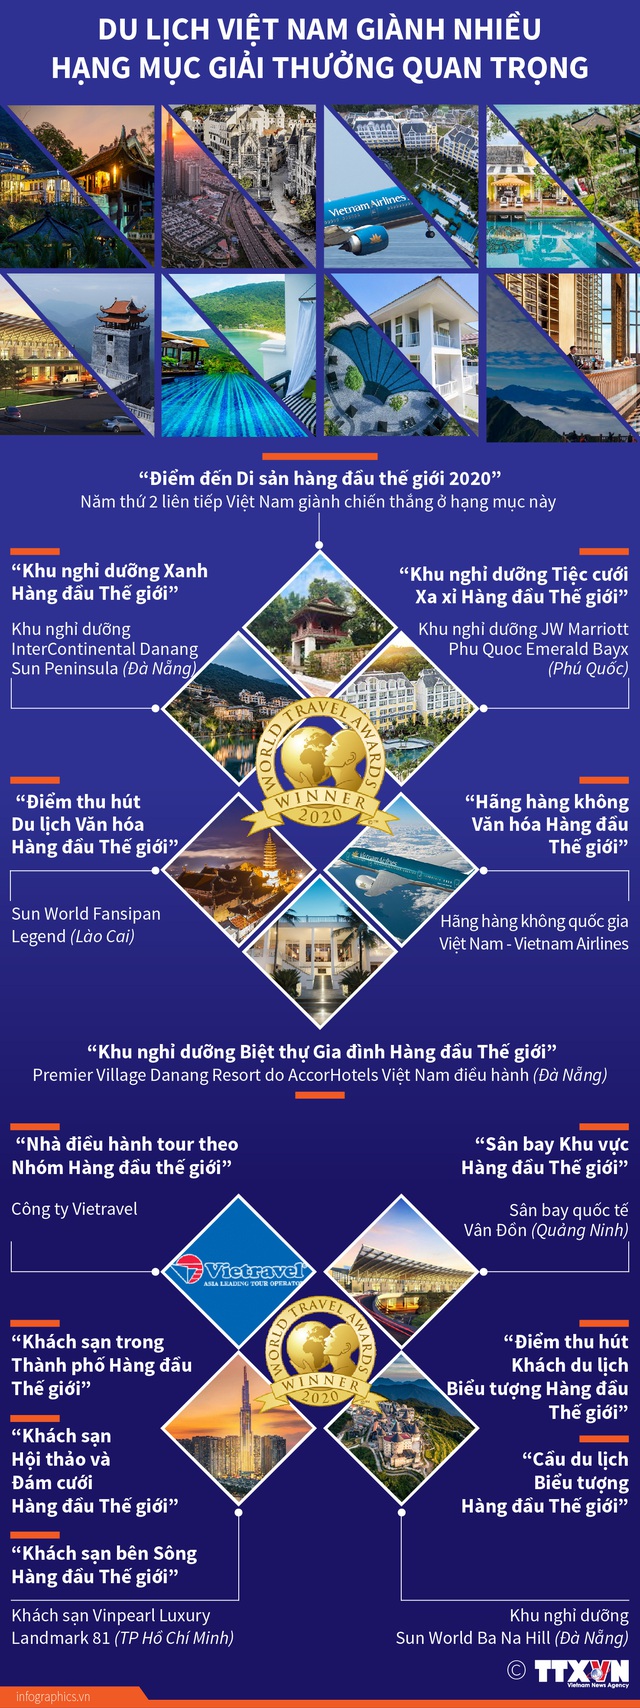 [INFOGRAPHIC] Du lịch Việt Nam giành nhiều hạng mục giải thưởng quan trọng - Ảnh 1.